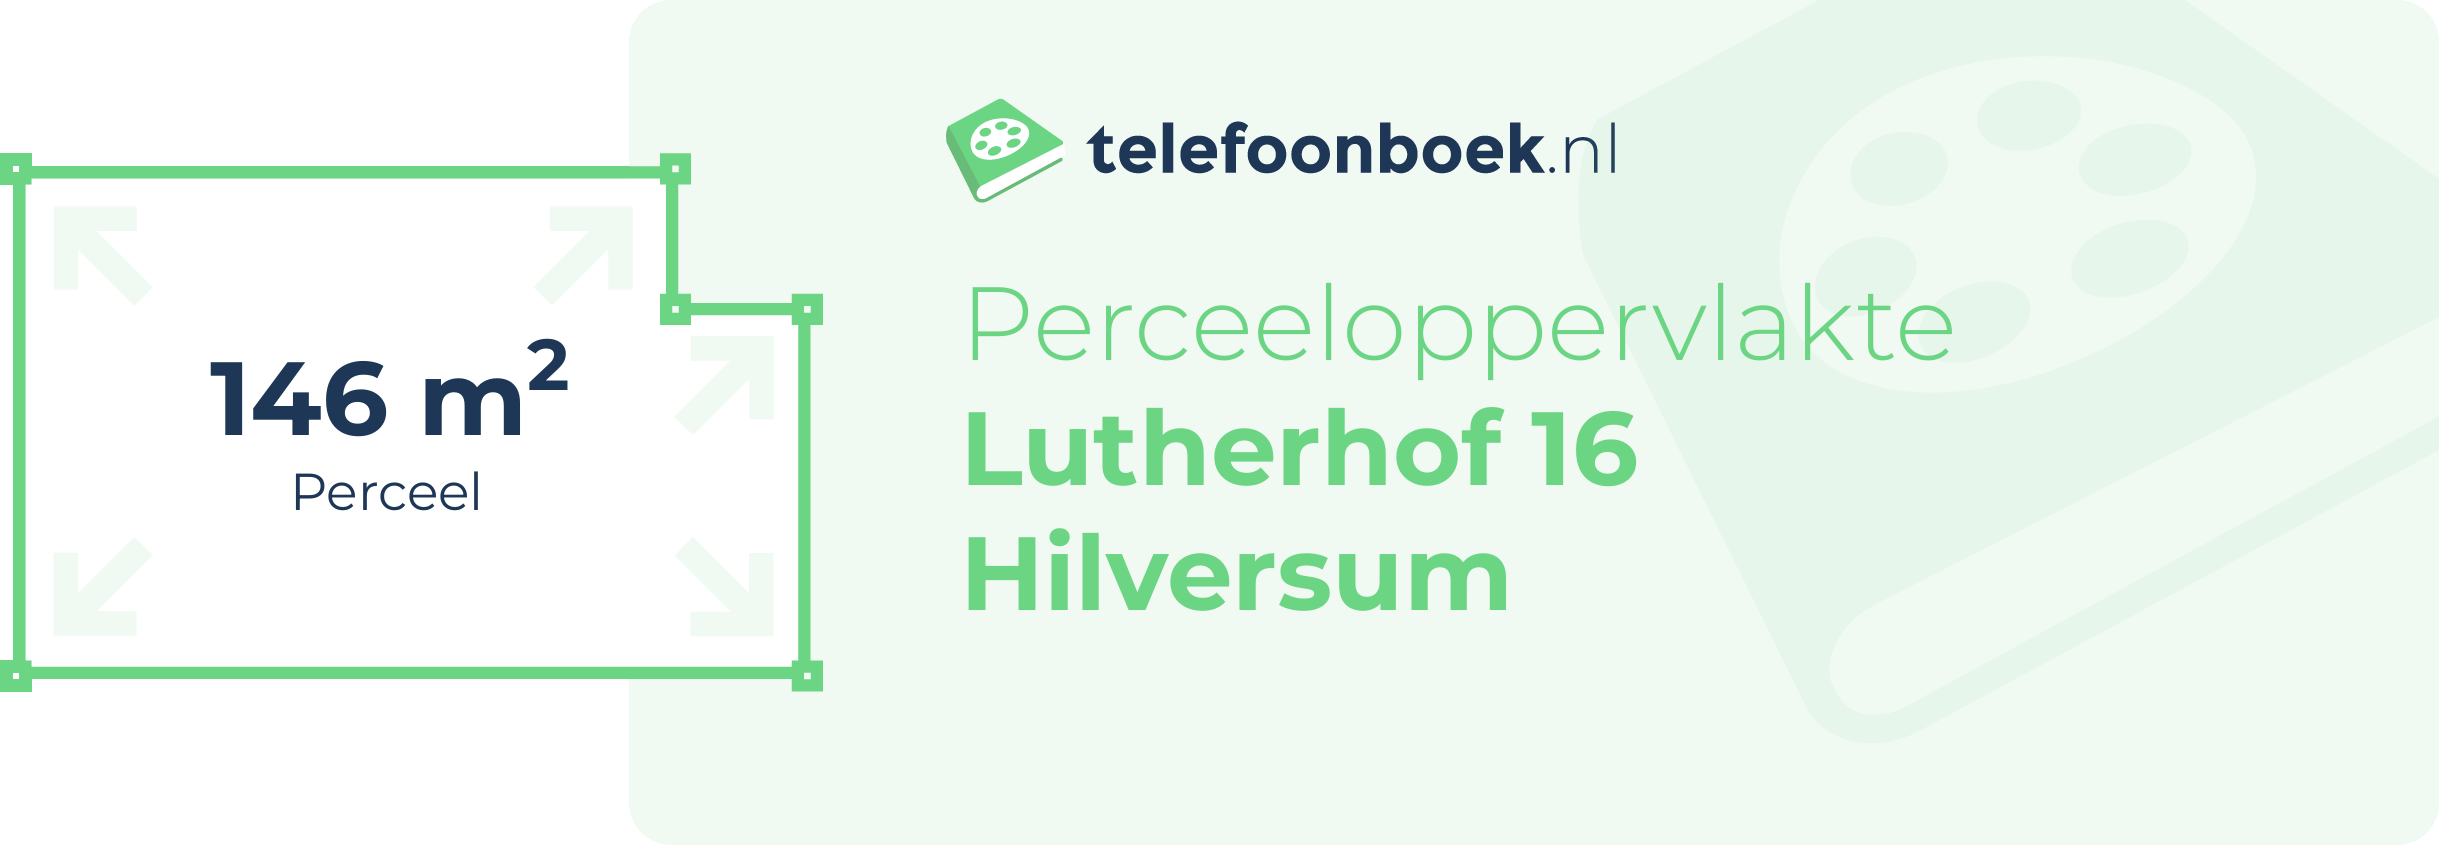 Perceeloppervlakte Lutherhof 16 Hilversum